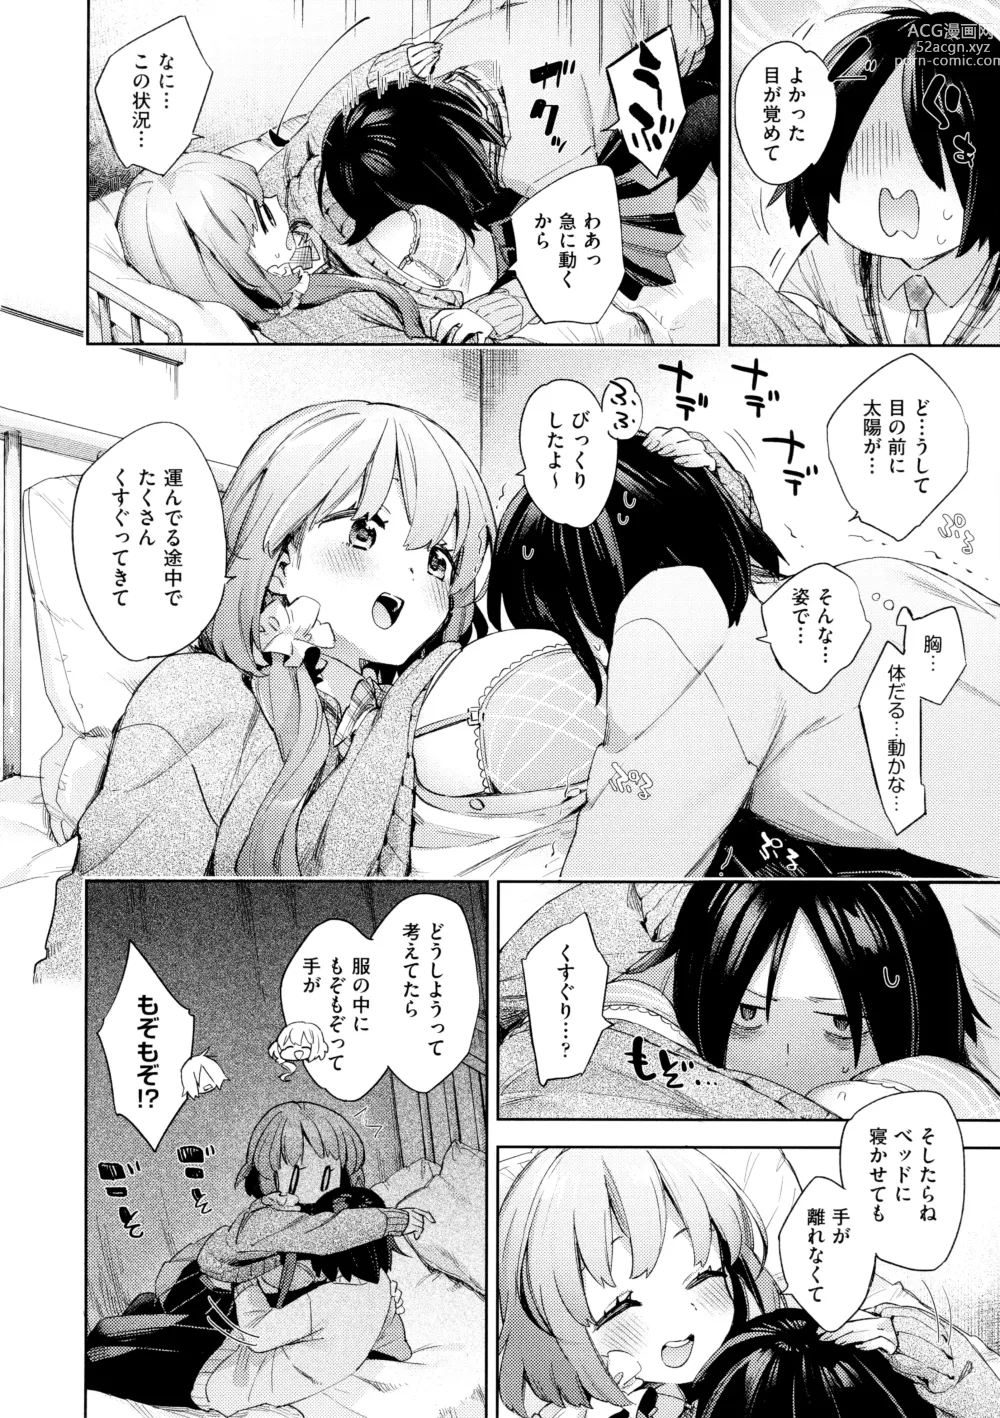 Page 16 of manga Echijoshi Profile - H Girl Profile